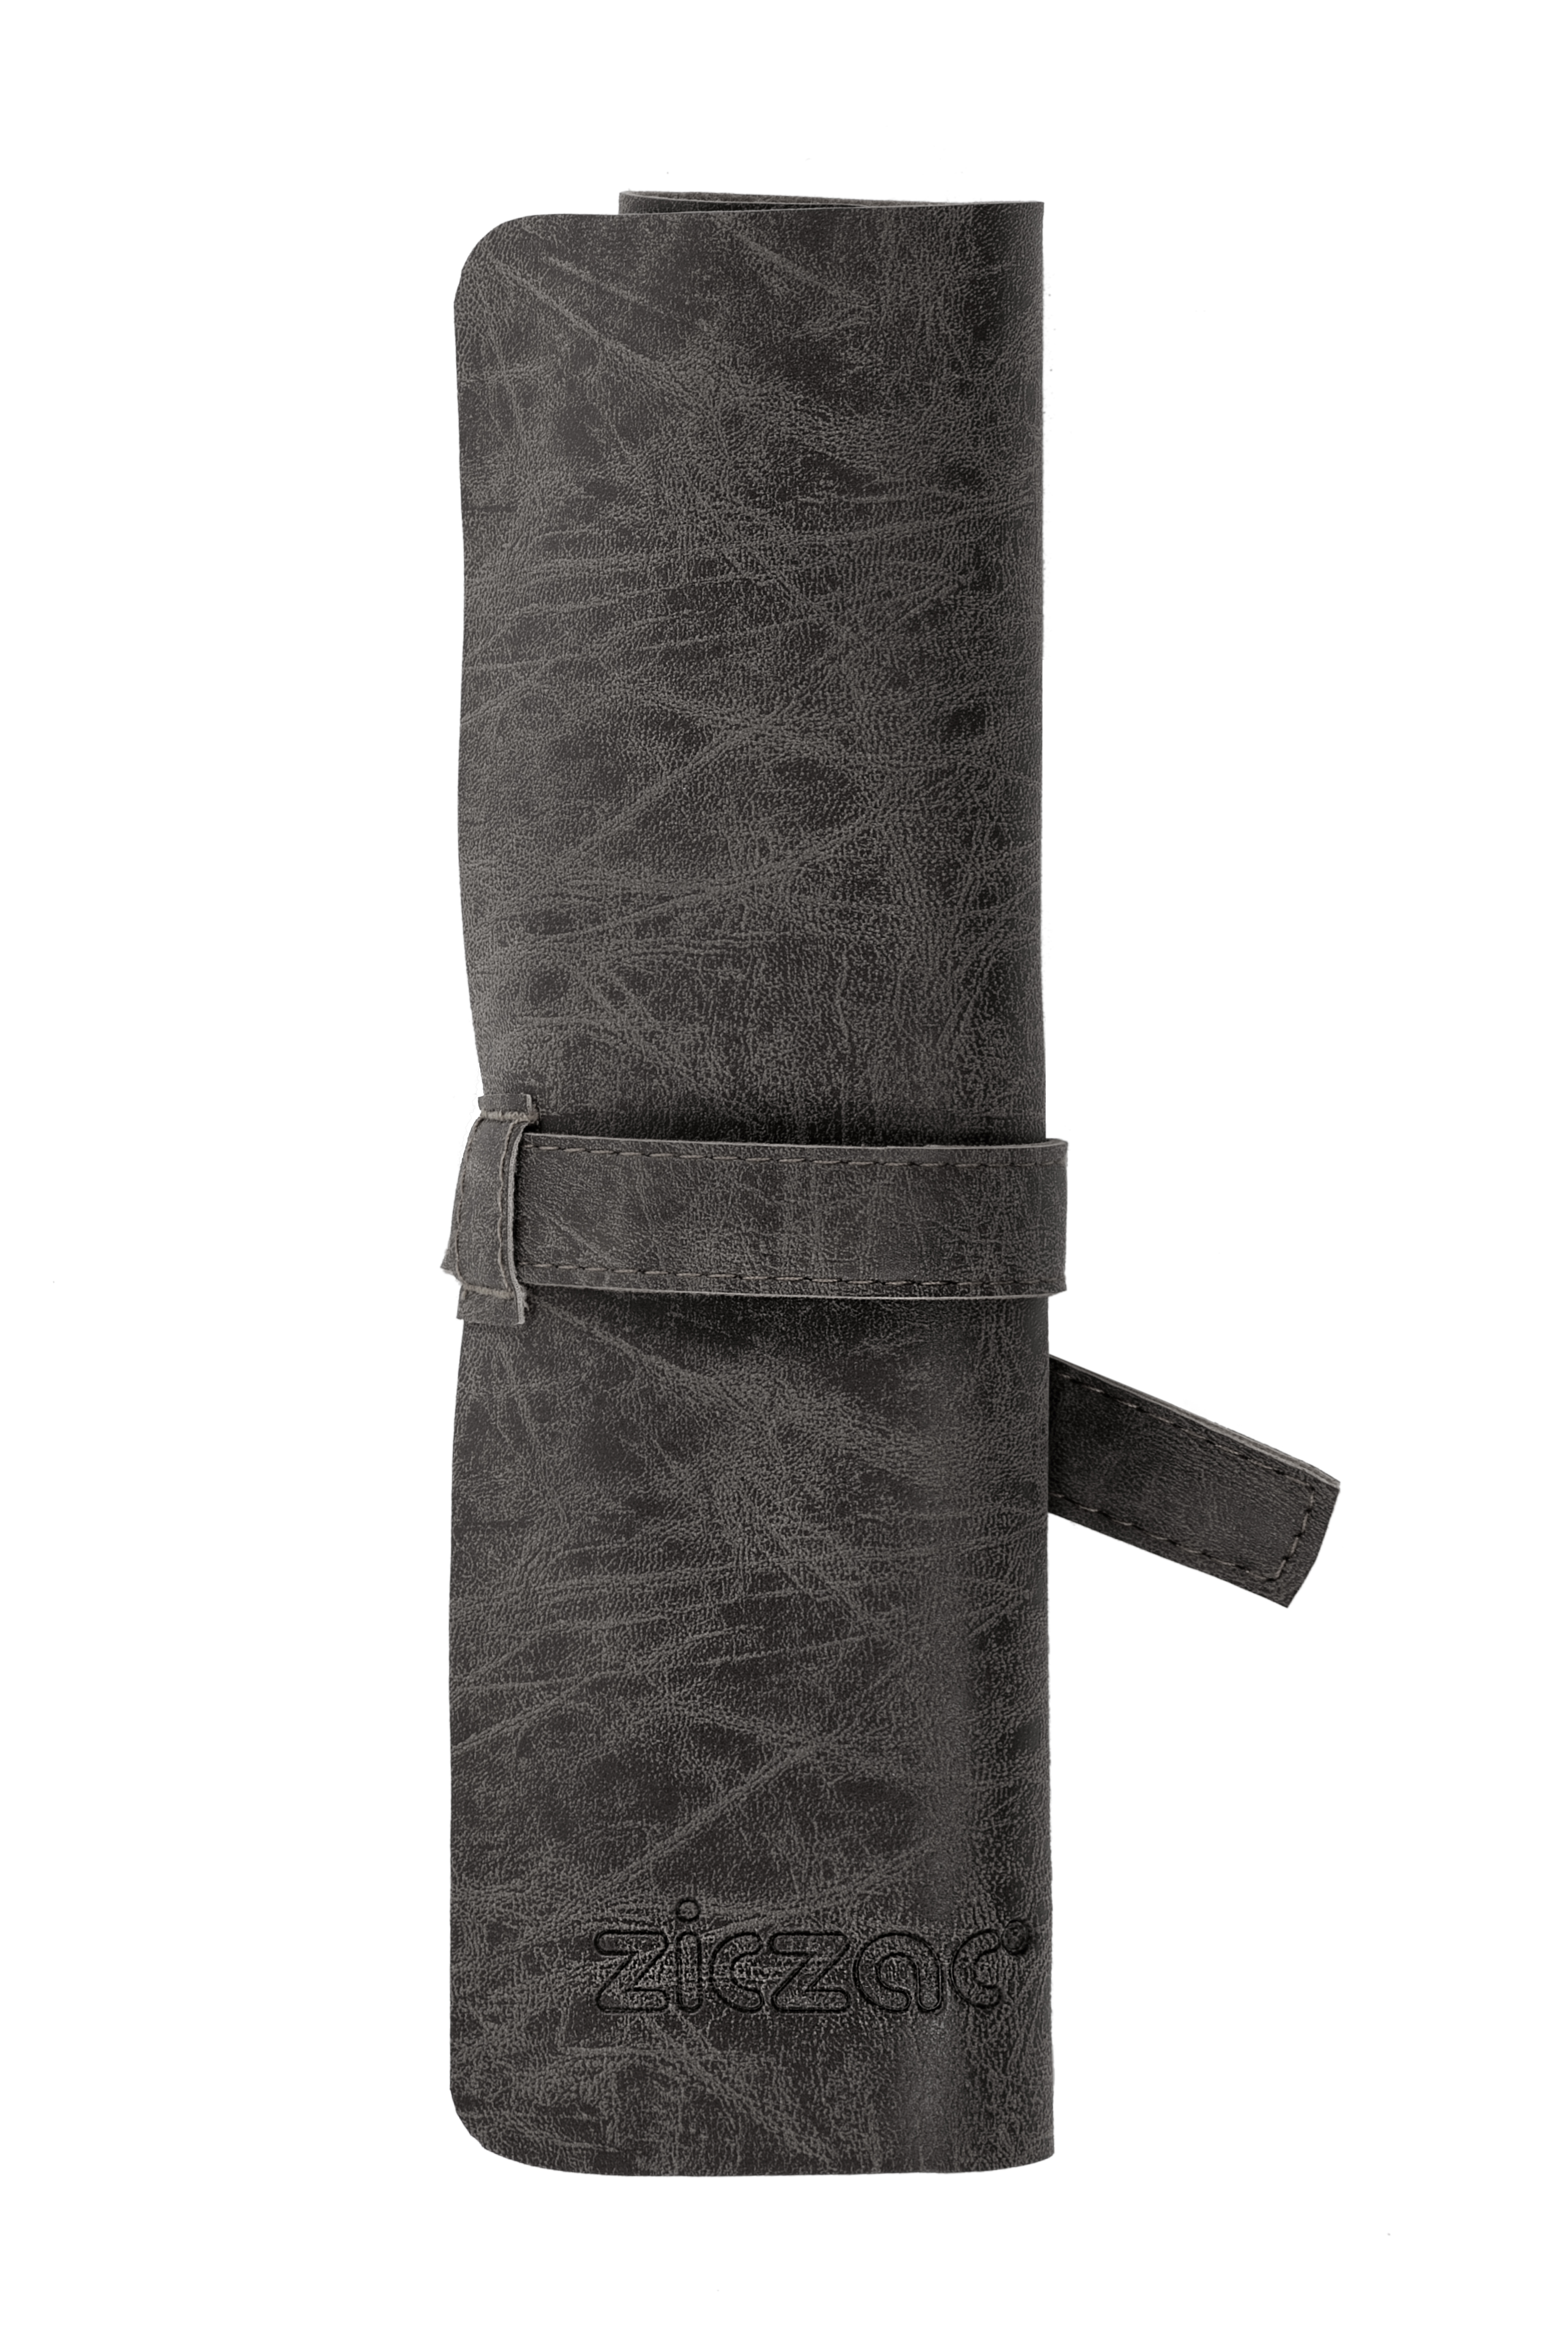 Porte-couverts TRUMAN, 22.5 x 26 cm, black - SET/2